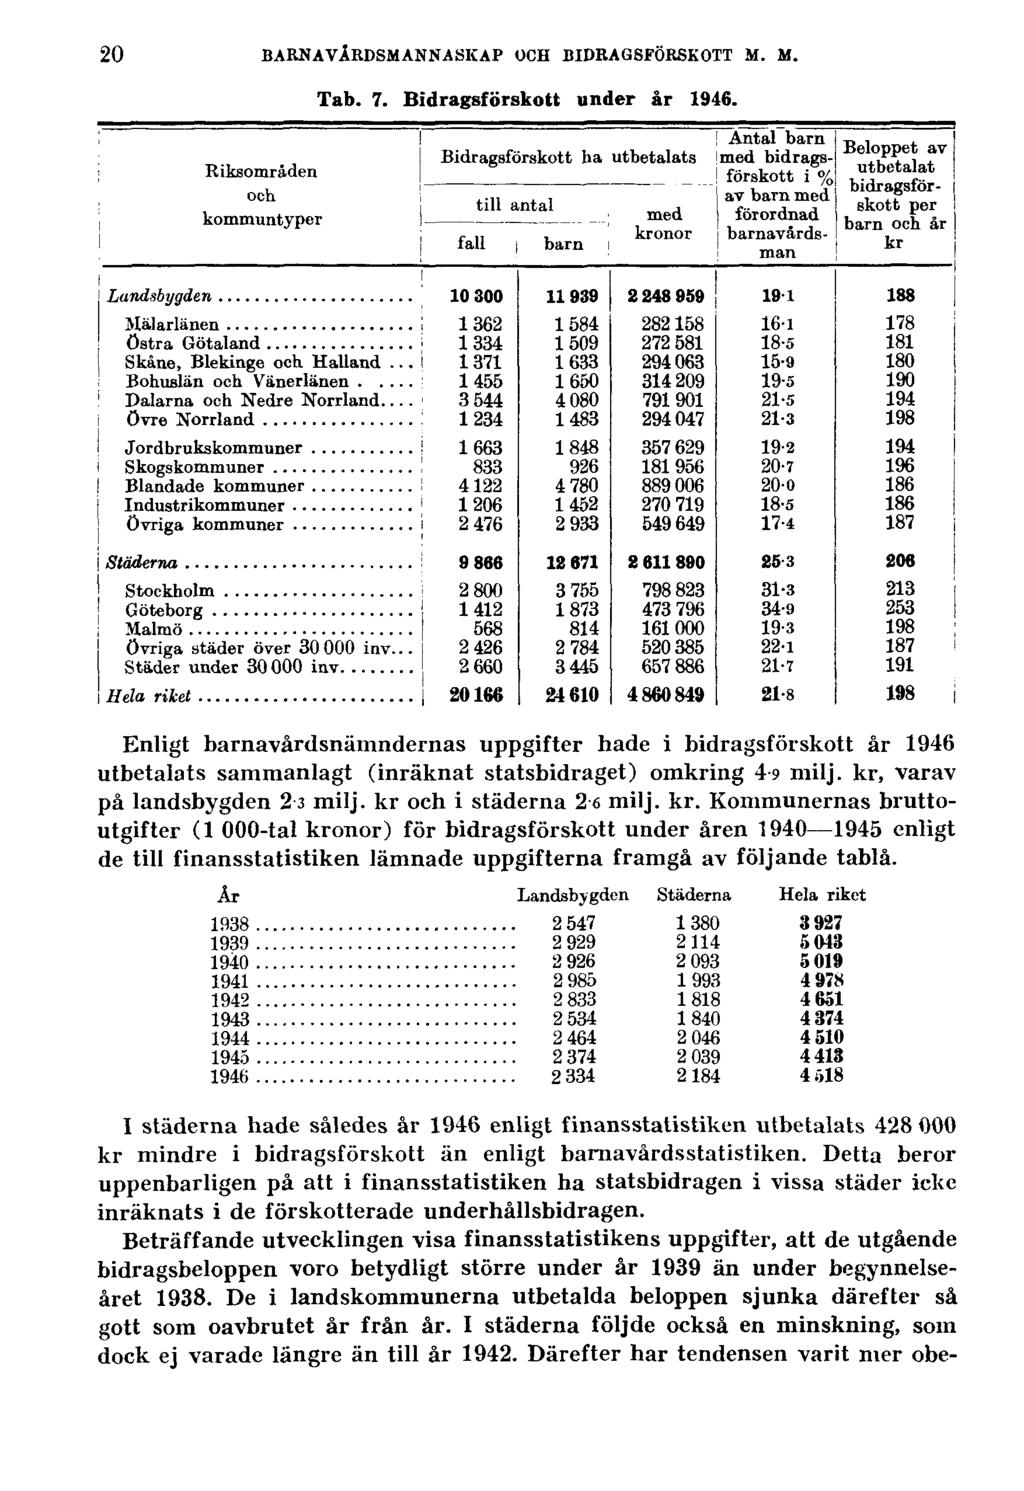 20 BARNAVÅRDSMANNASKAP OCH BIDRAGSFÖRSKOTT M. M. Tab. 7. Bidragsförskott under år 1946.